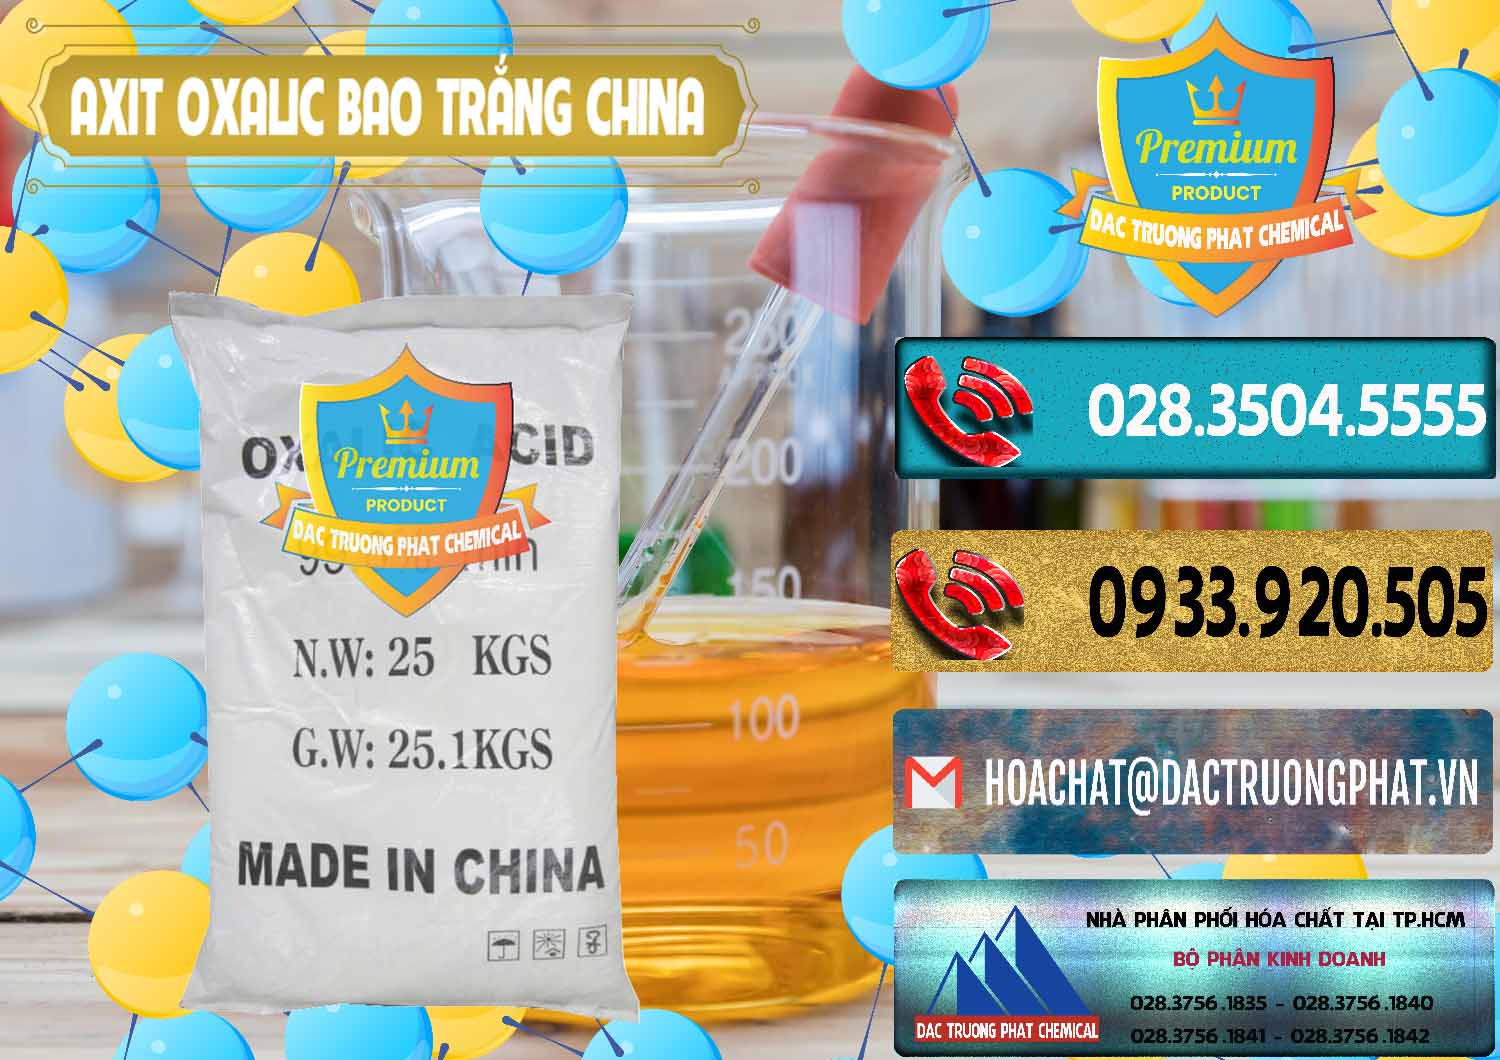 Công ty chuyên bán _ phân phối Acid Oxalic – Axit Oxalic 99.6% Bao Trắng Trung Quốc China - 0270 - Nơi chuyên phân phối & cung ứng hóa chất tại TP.HCM - hoachatdetnhuom.com